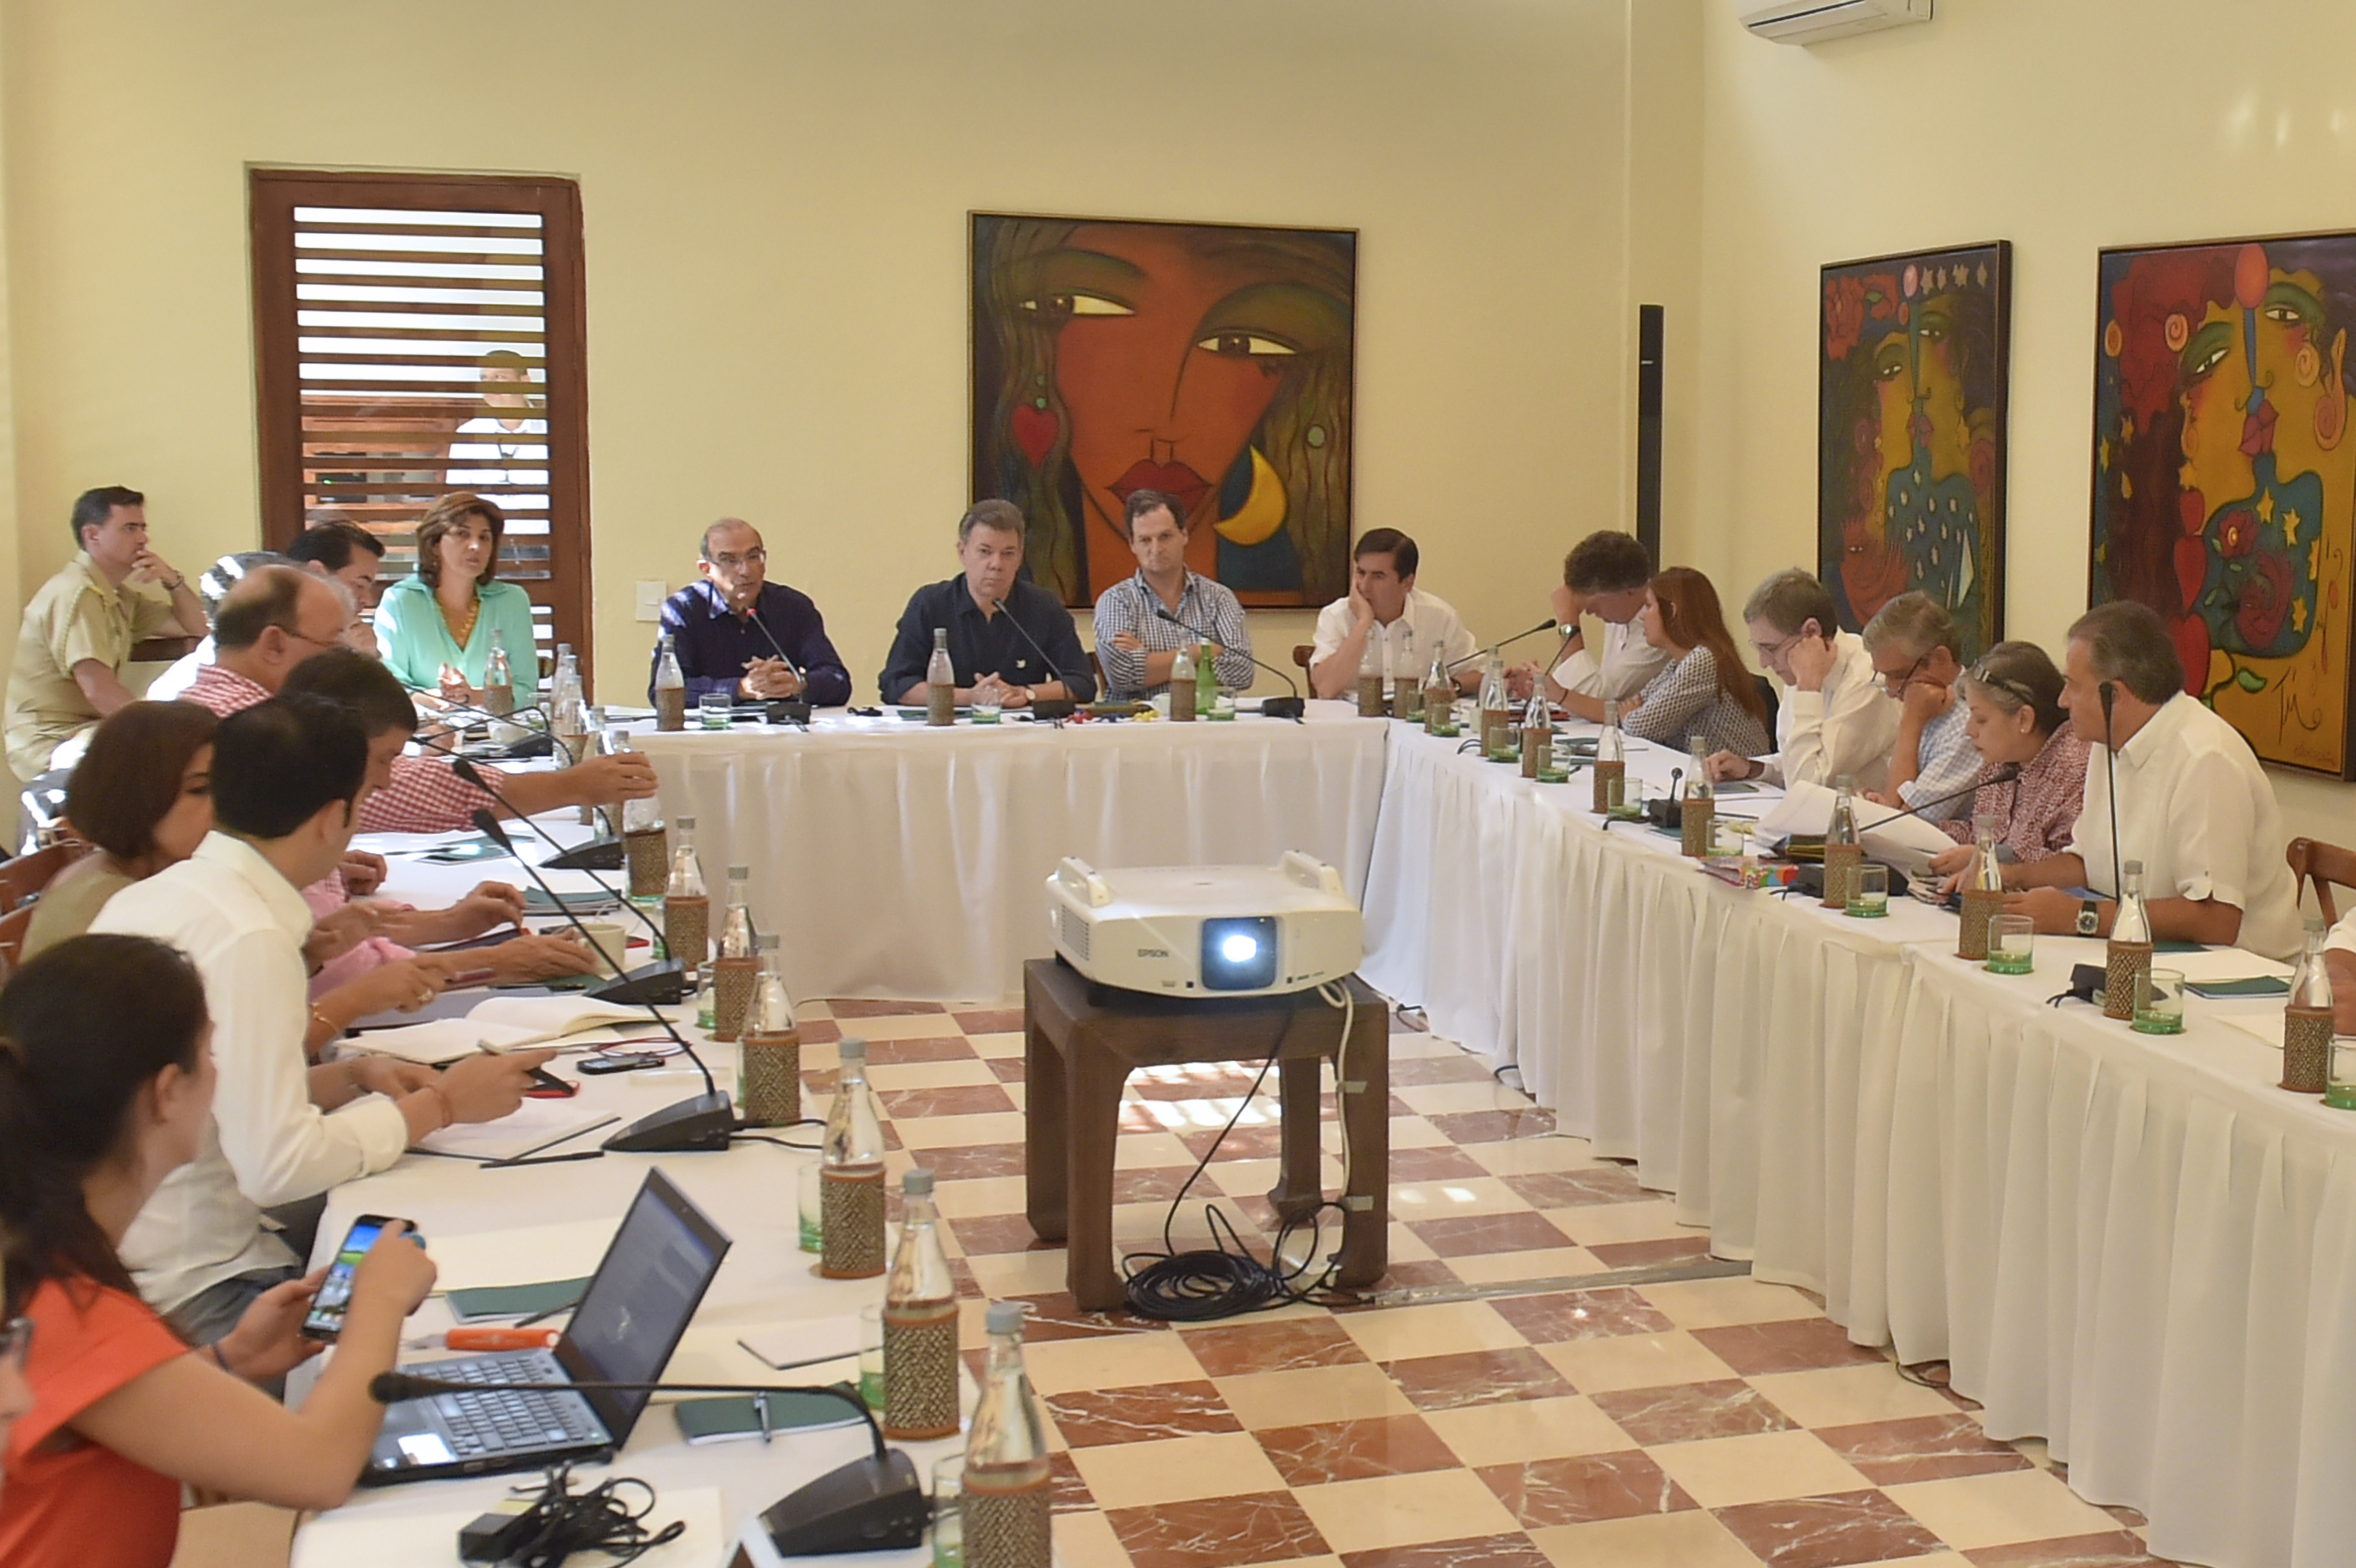 Canciller Holguín acompañó al Presidente Juan Manuel Santos en la reunión con los integrantes del equipo negociador del Gobierno en el proceso de paz que se realizó en Cartagena